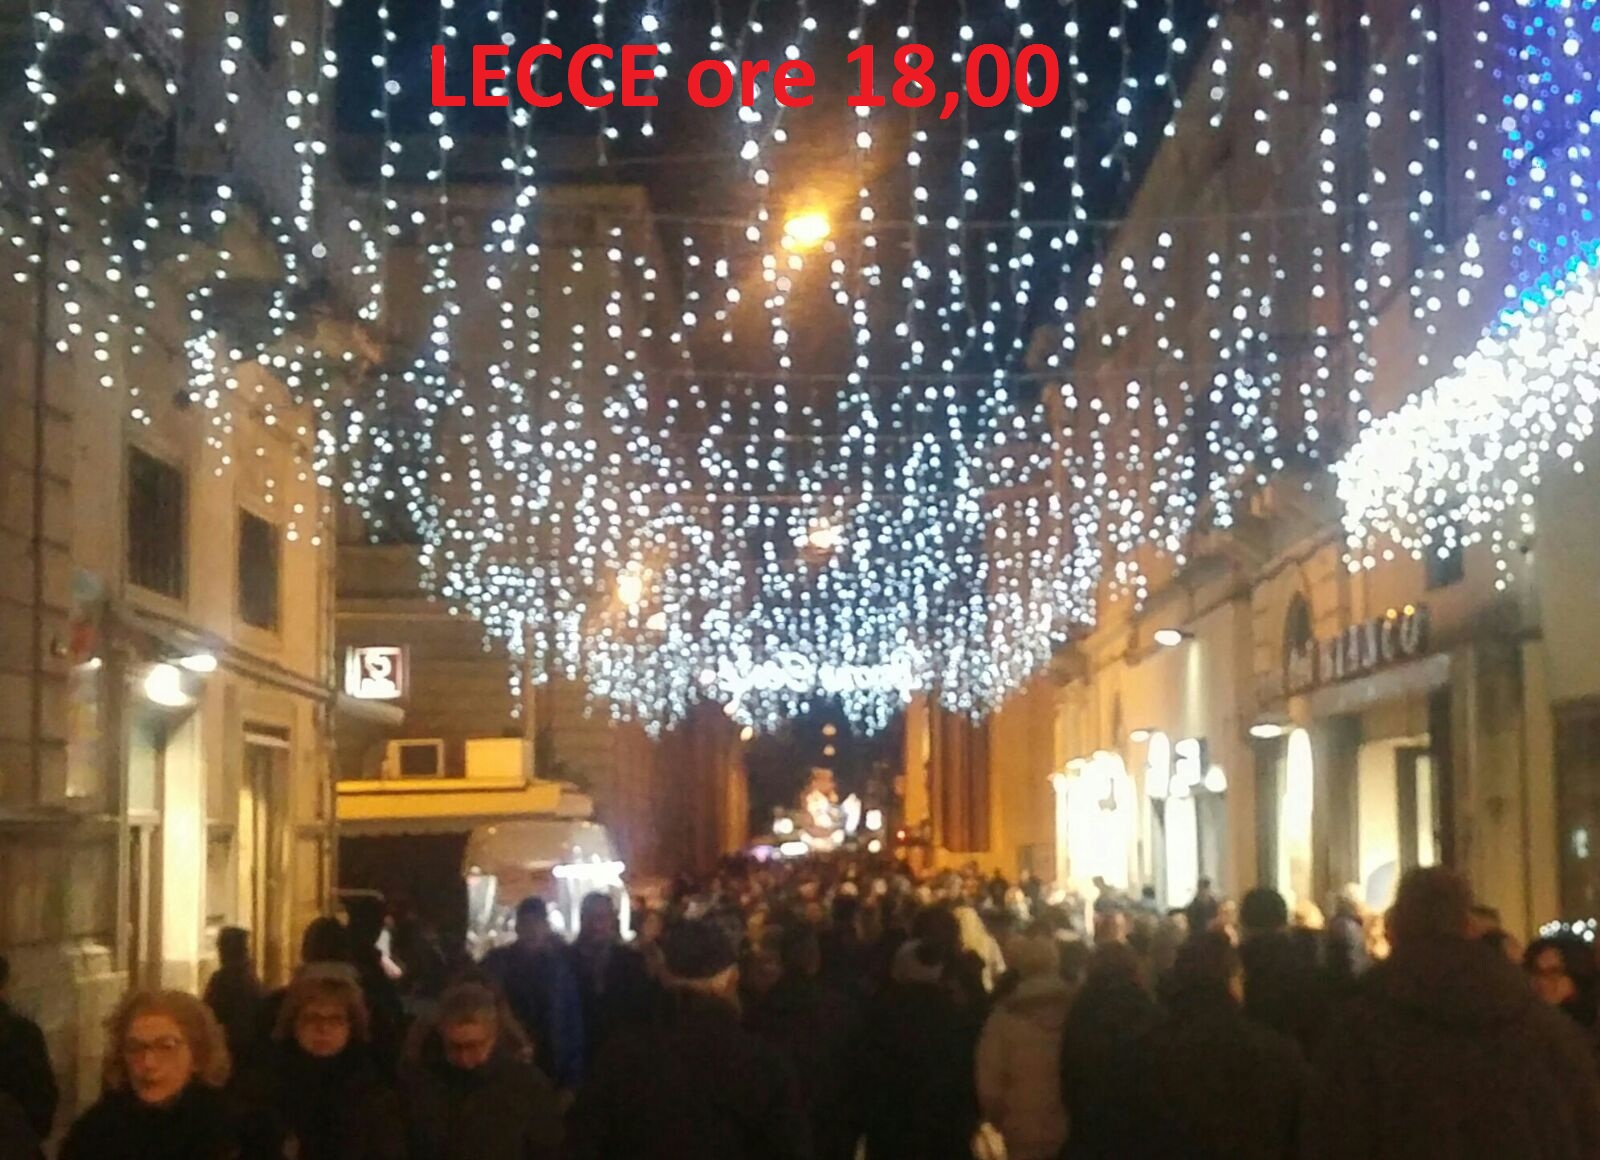 Natale Lecce.Natale 8 Dicembre Ore 18 00 Lecce E Brindisi Trova Le Differenze New Pam It Informiamo Brindisi E Provincia